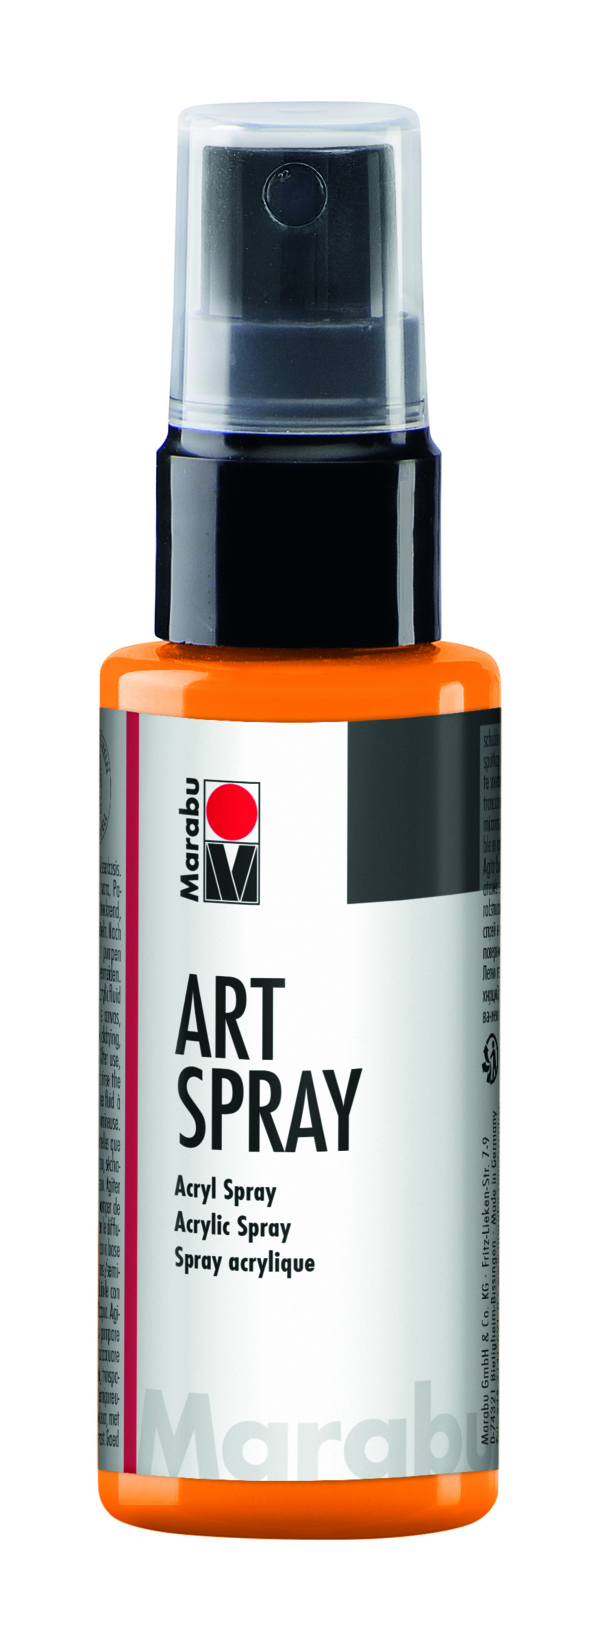 Mandarine - Art Spray